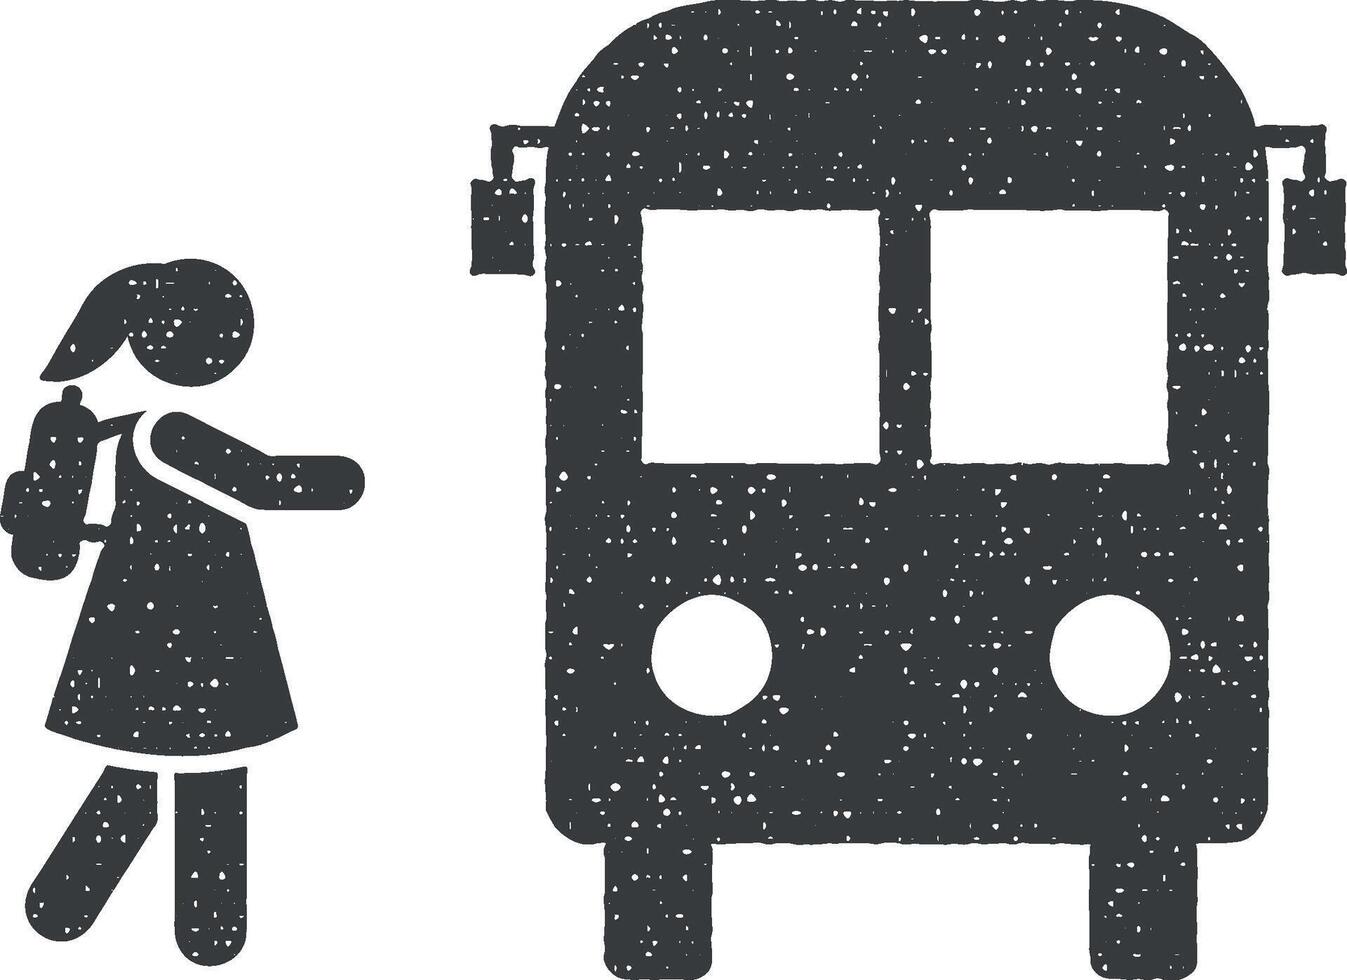 fille étudiant aller autobus école pictogramme icône vecteur illustration dans timbre style